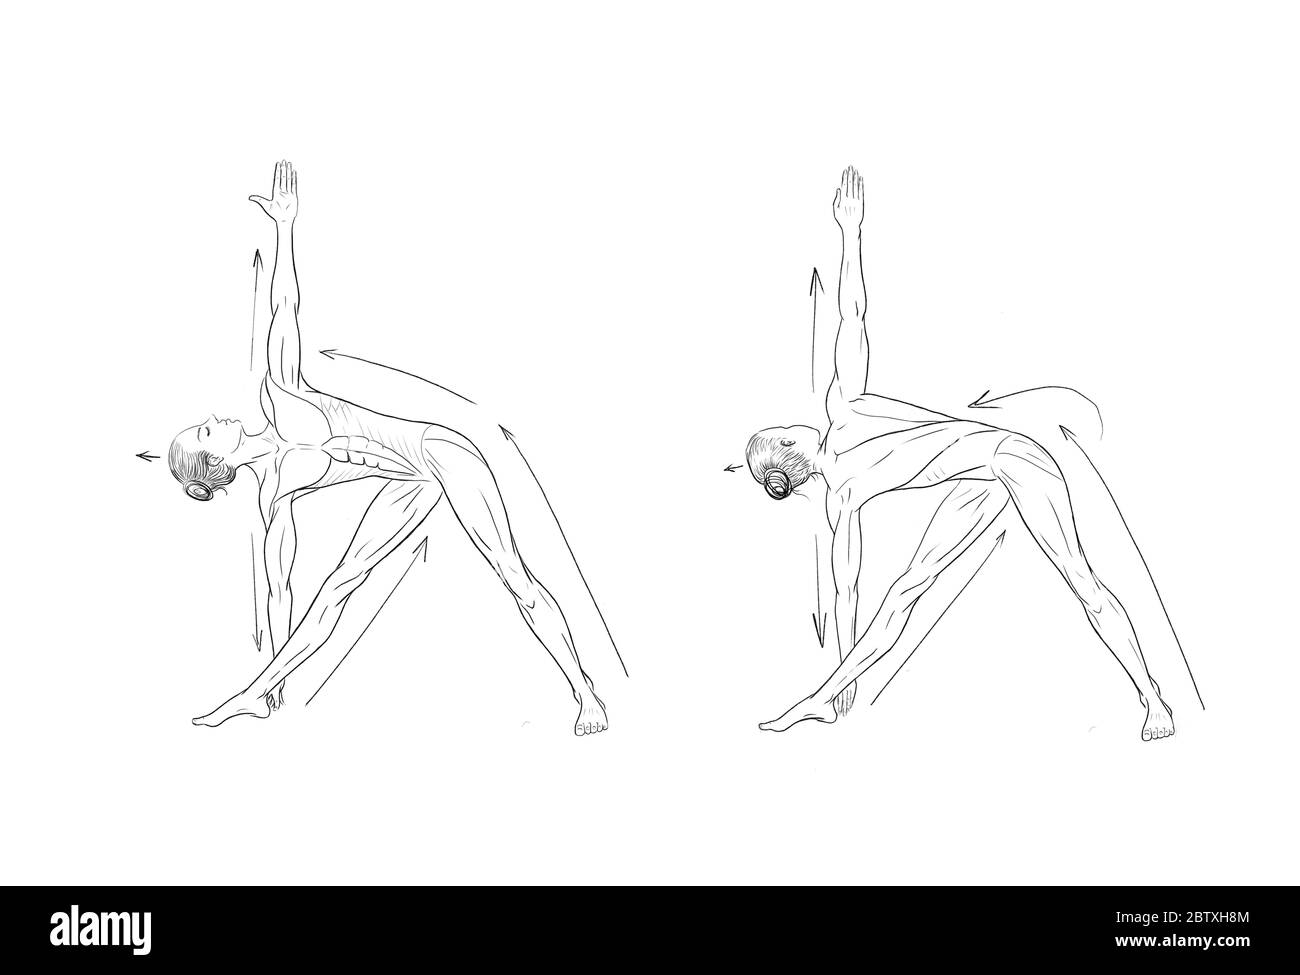 Illustration médicale des asanas de yoga Banque D'Images